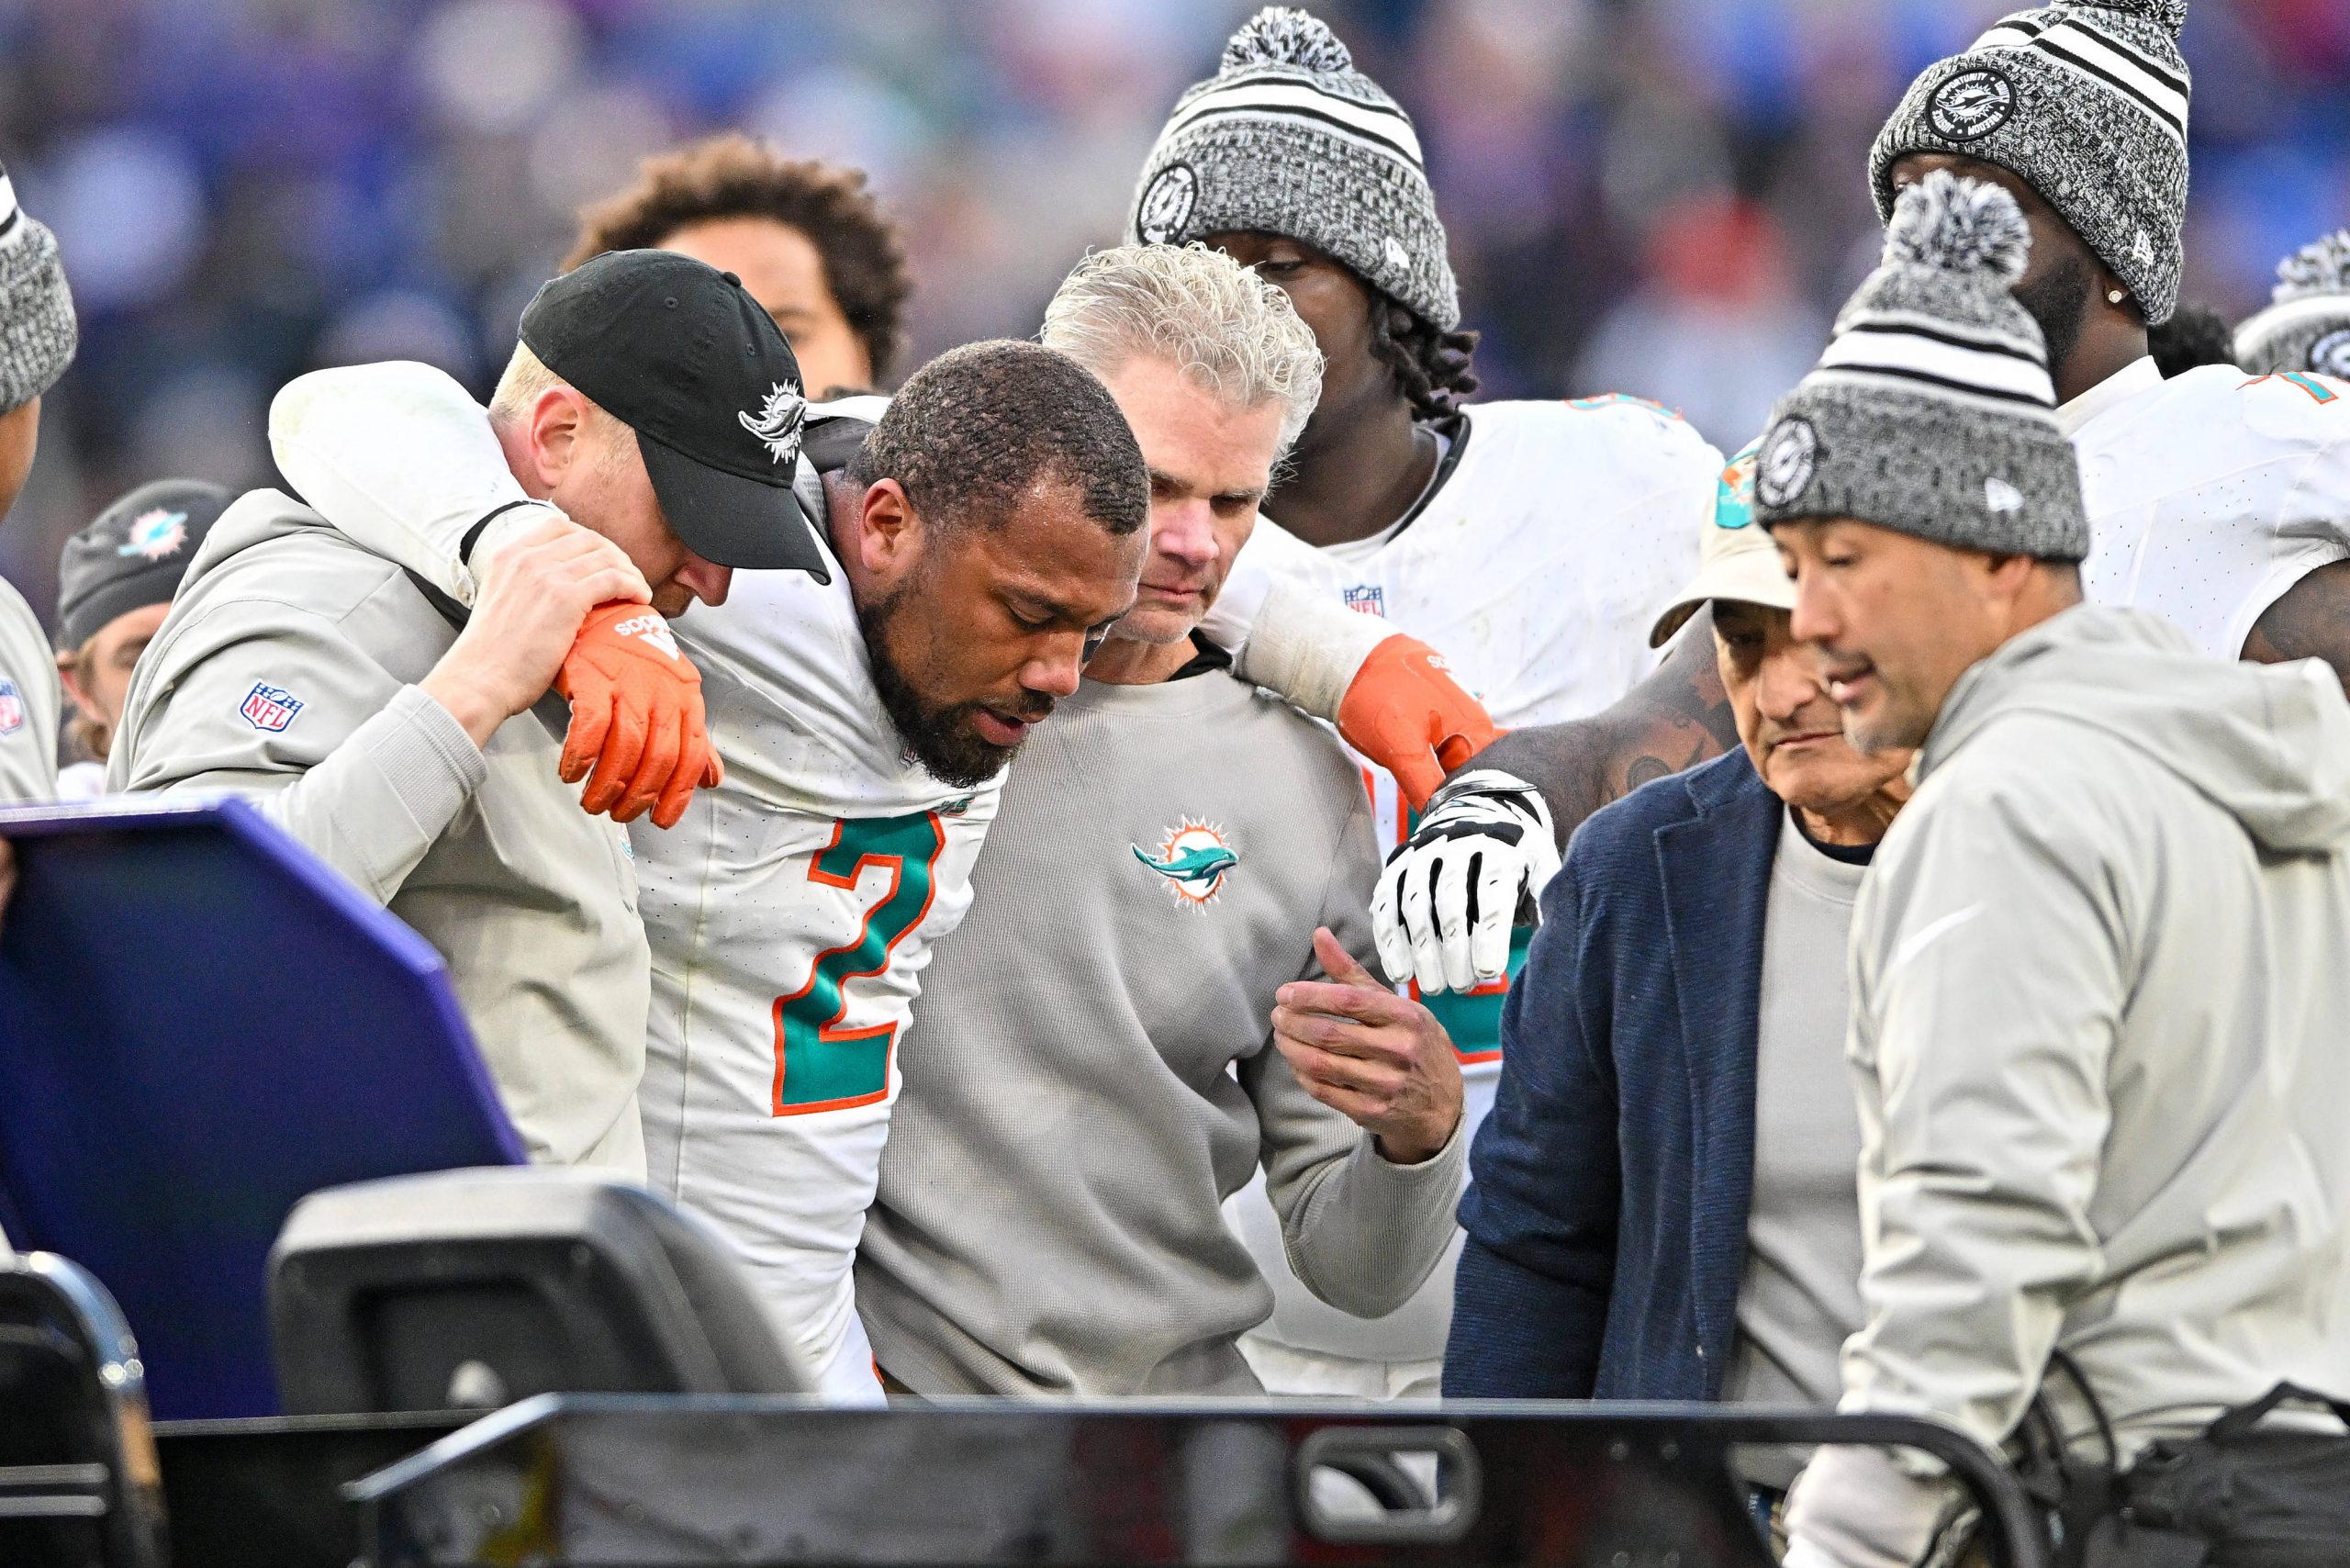 FootballR - NFL - Ein Spieler der Miami Dolphins, Bradley Chubb, wird nach einer Verletzung vom Spielfeld getragen.